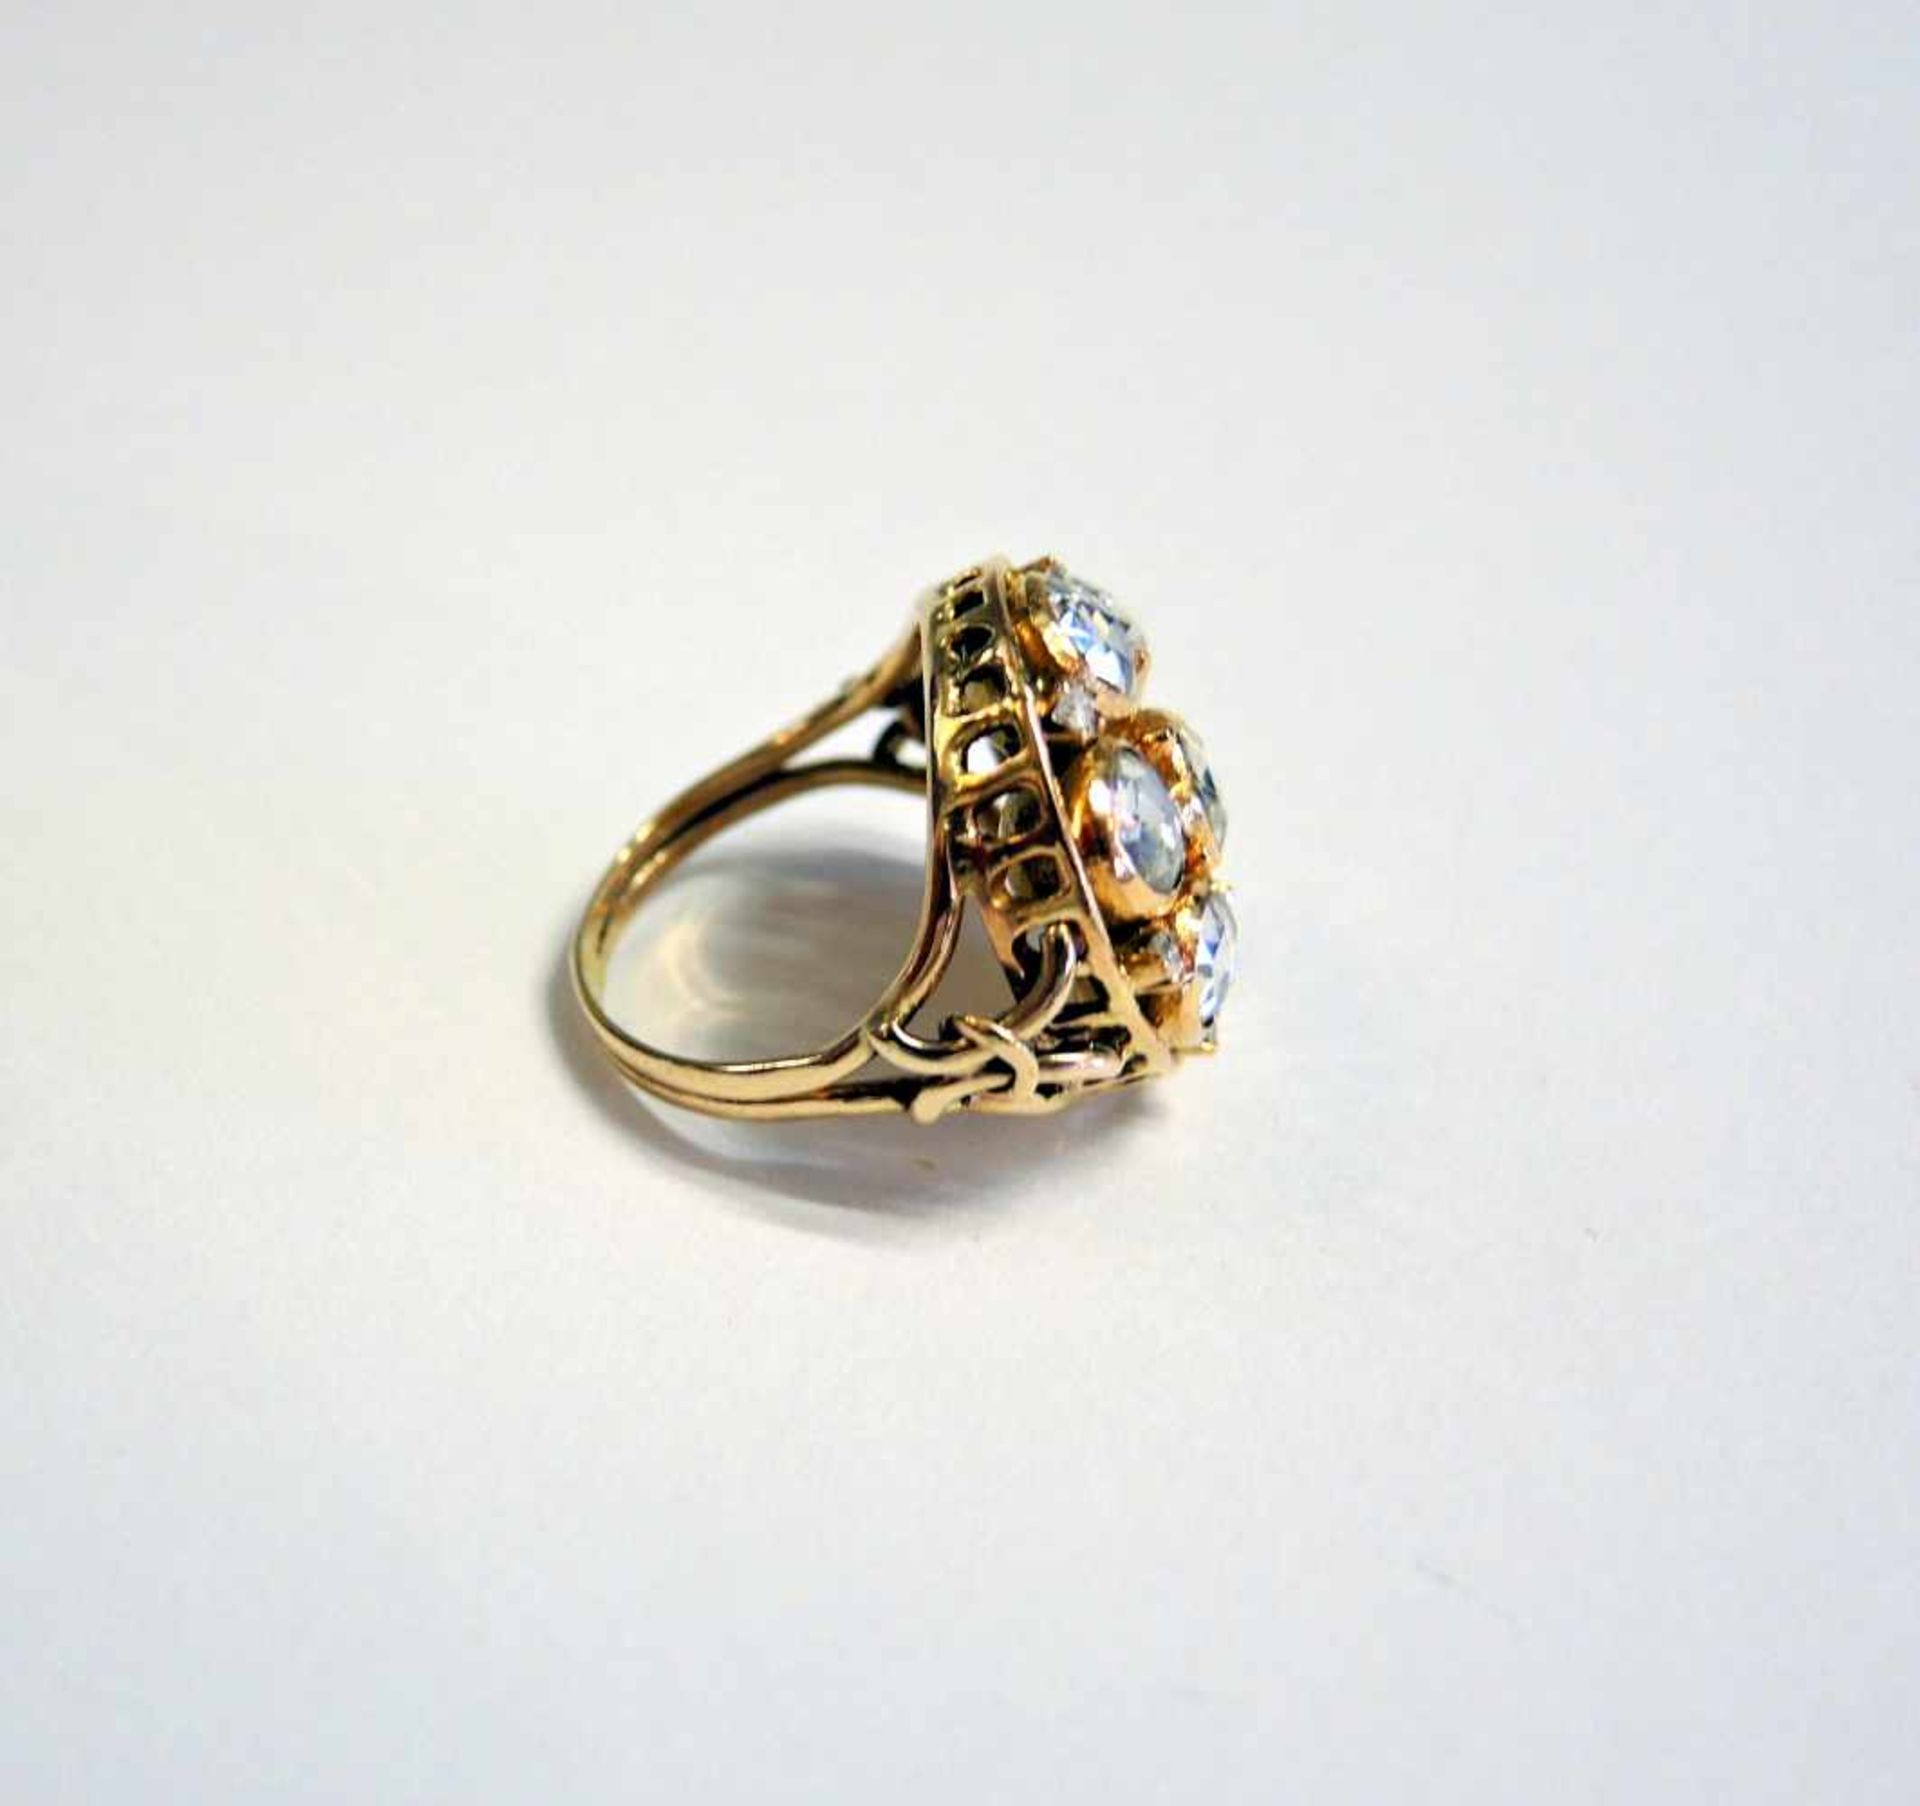 Großer Diamantrosen-Ring14 K. Gelbgold-Fassung mit Diamantrosenbesatz von ca. 4,5 ct. In guter, - Bild 2 aus 3